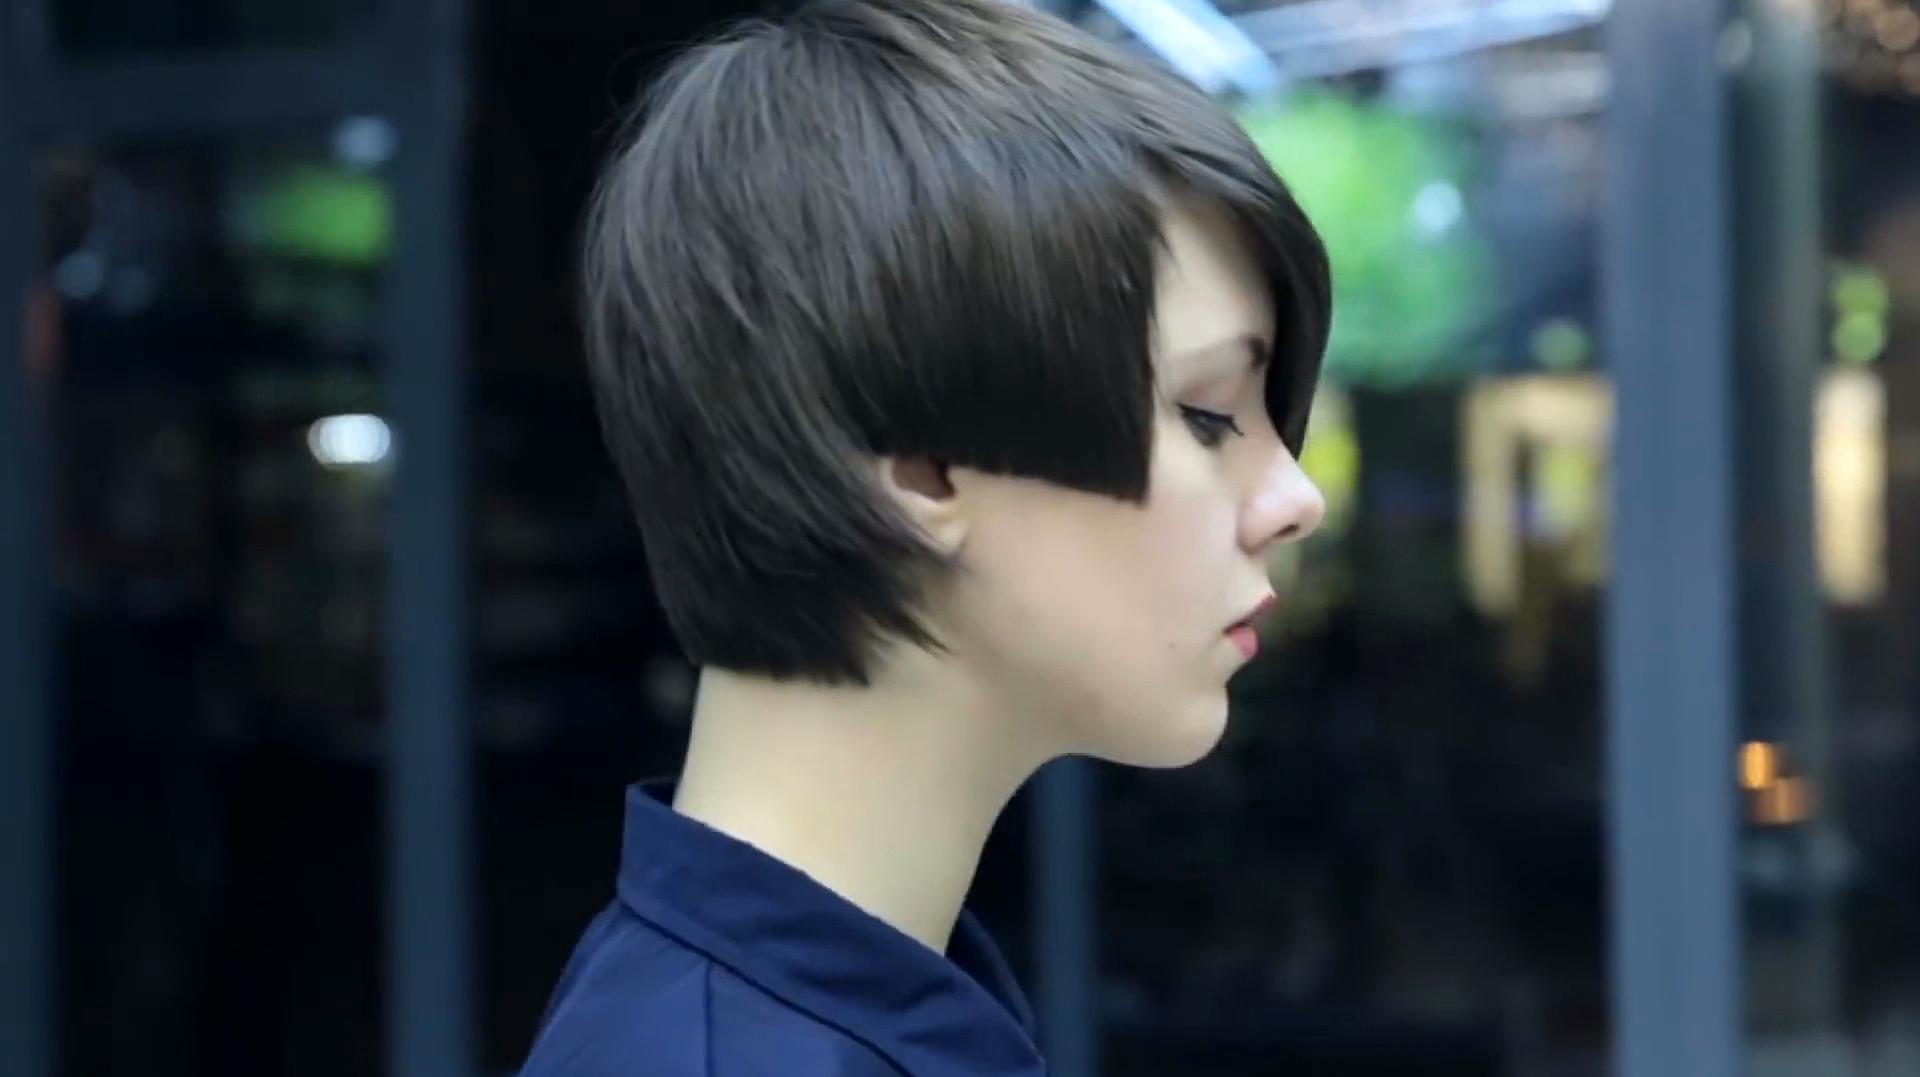 女孩剪这款发型非常帅气  22:13  来源:好看视频